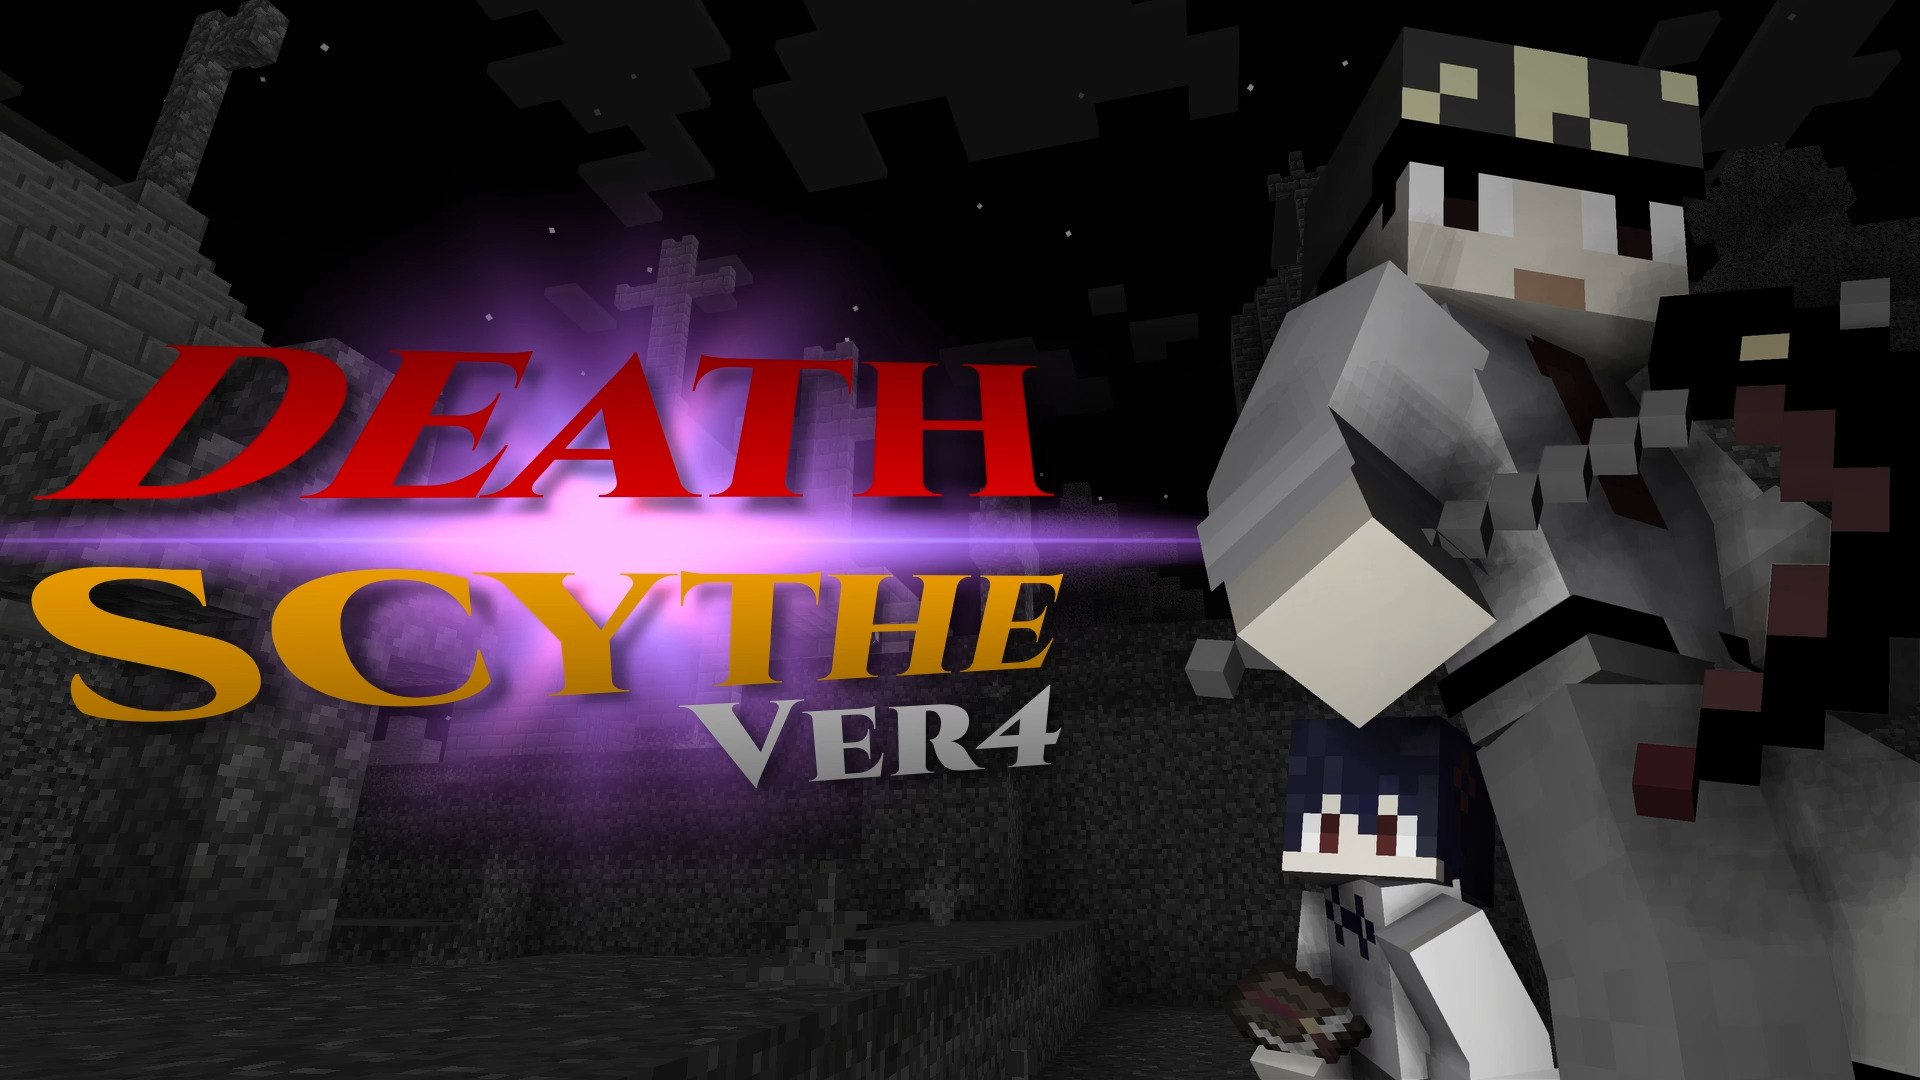 DeathScythe ver4-3f7abaa2